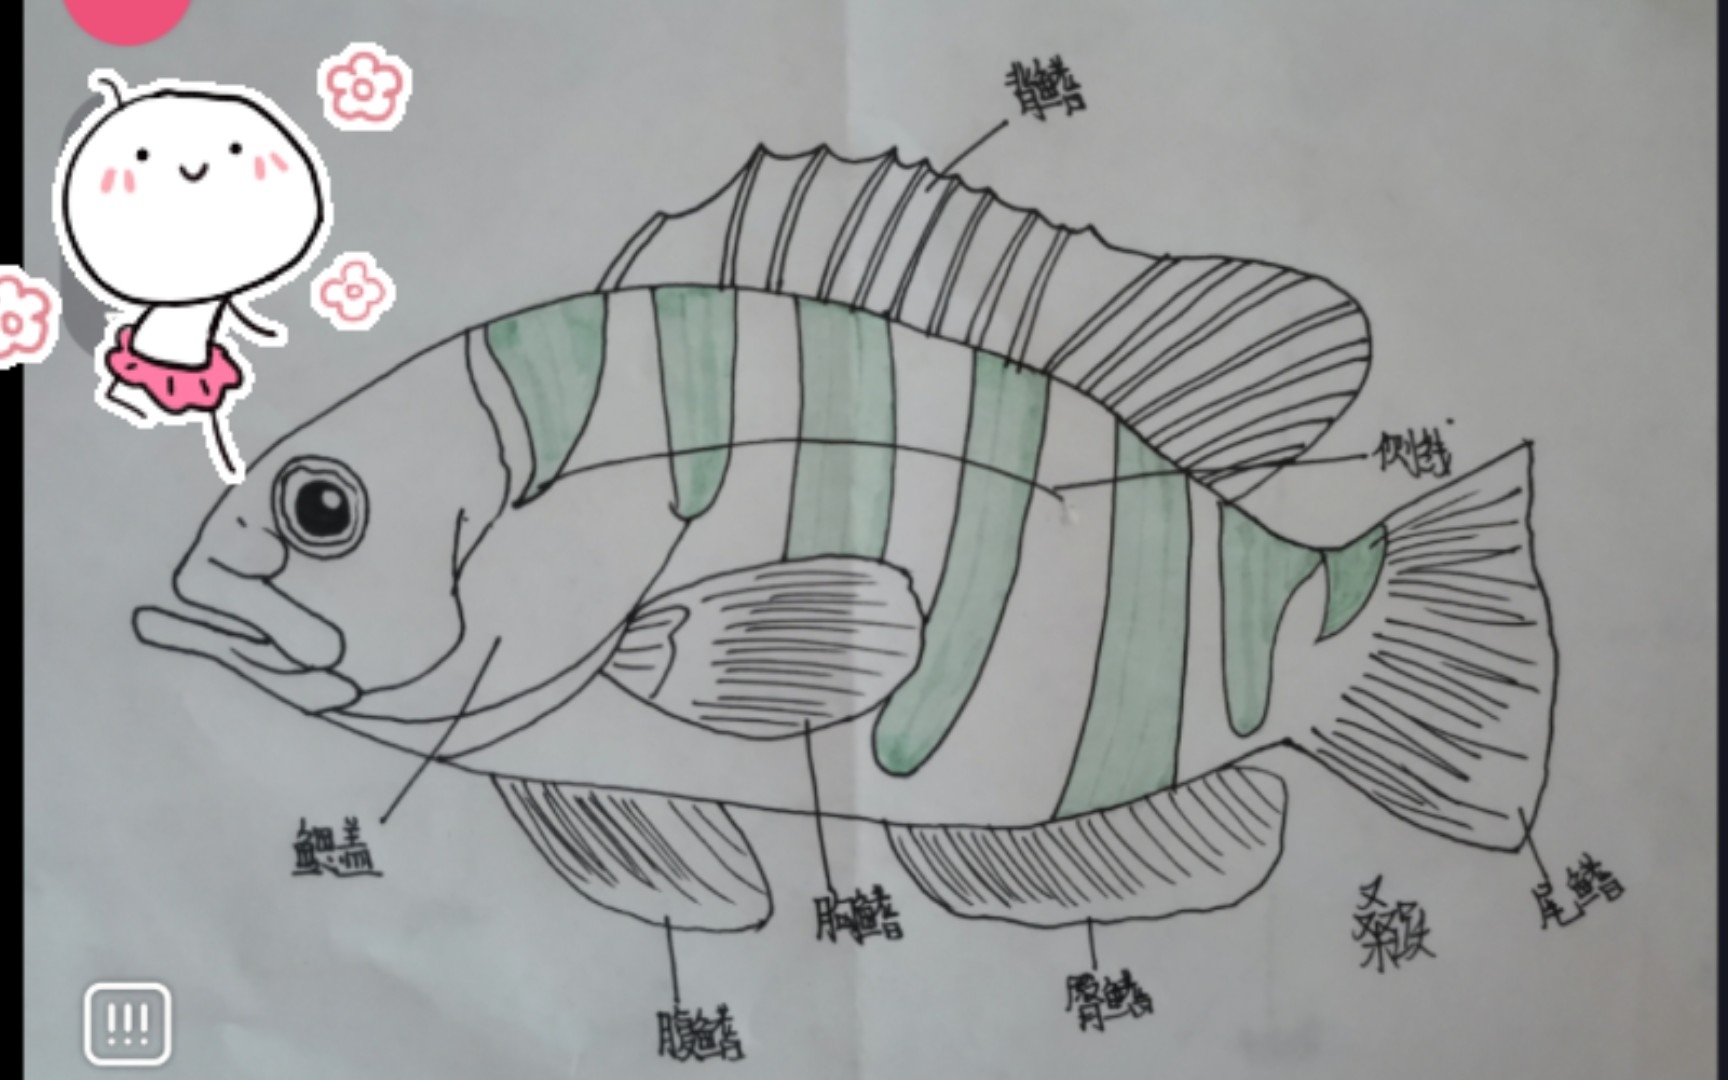 鱼的构造示意图儿童图片